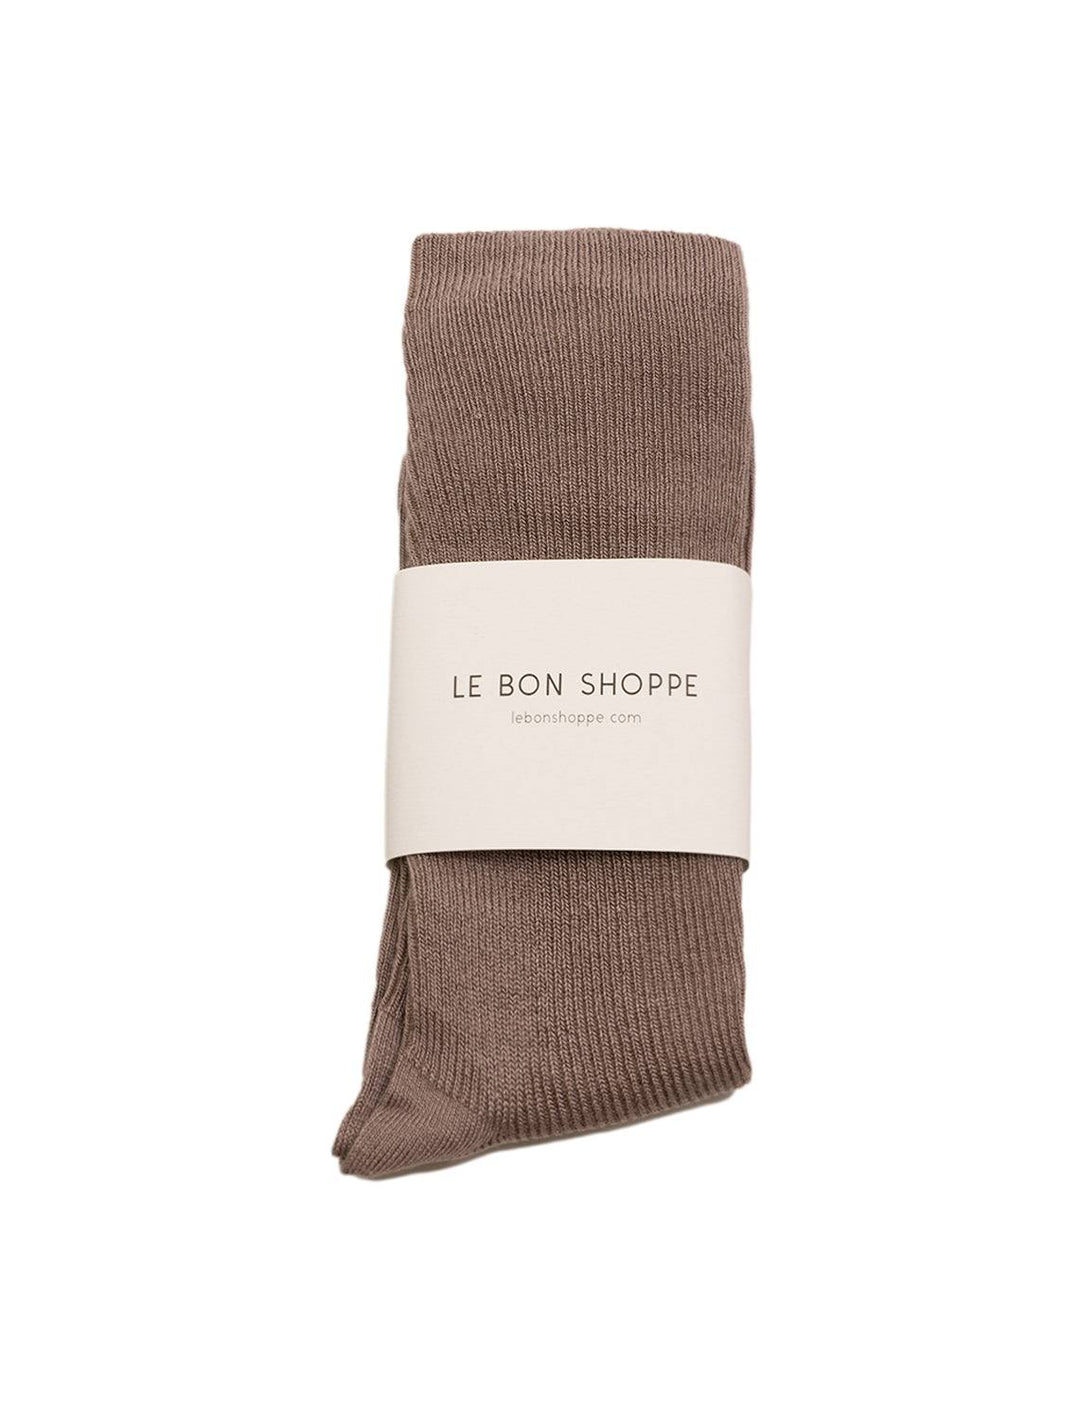 Le Bon Shoppe trouser socks in trench coat - Twigs